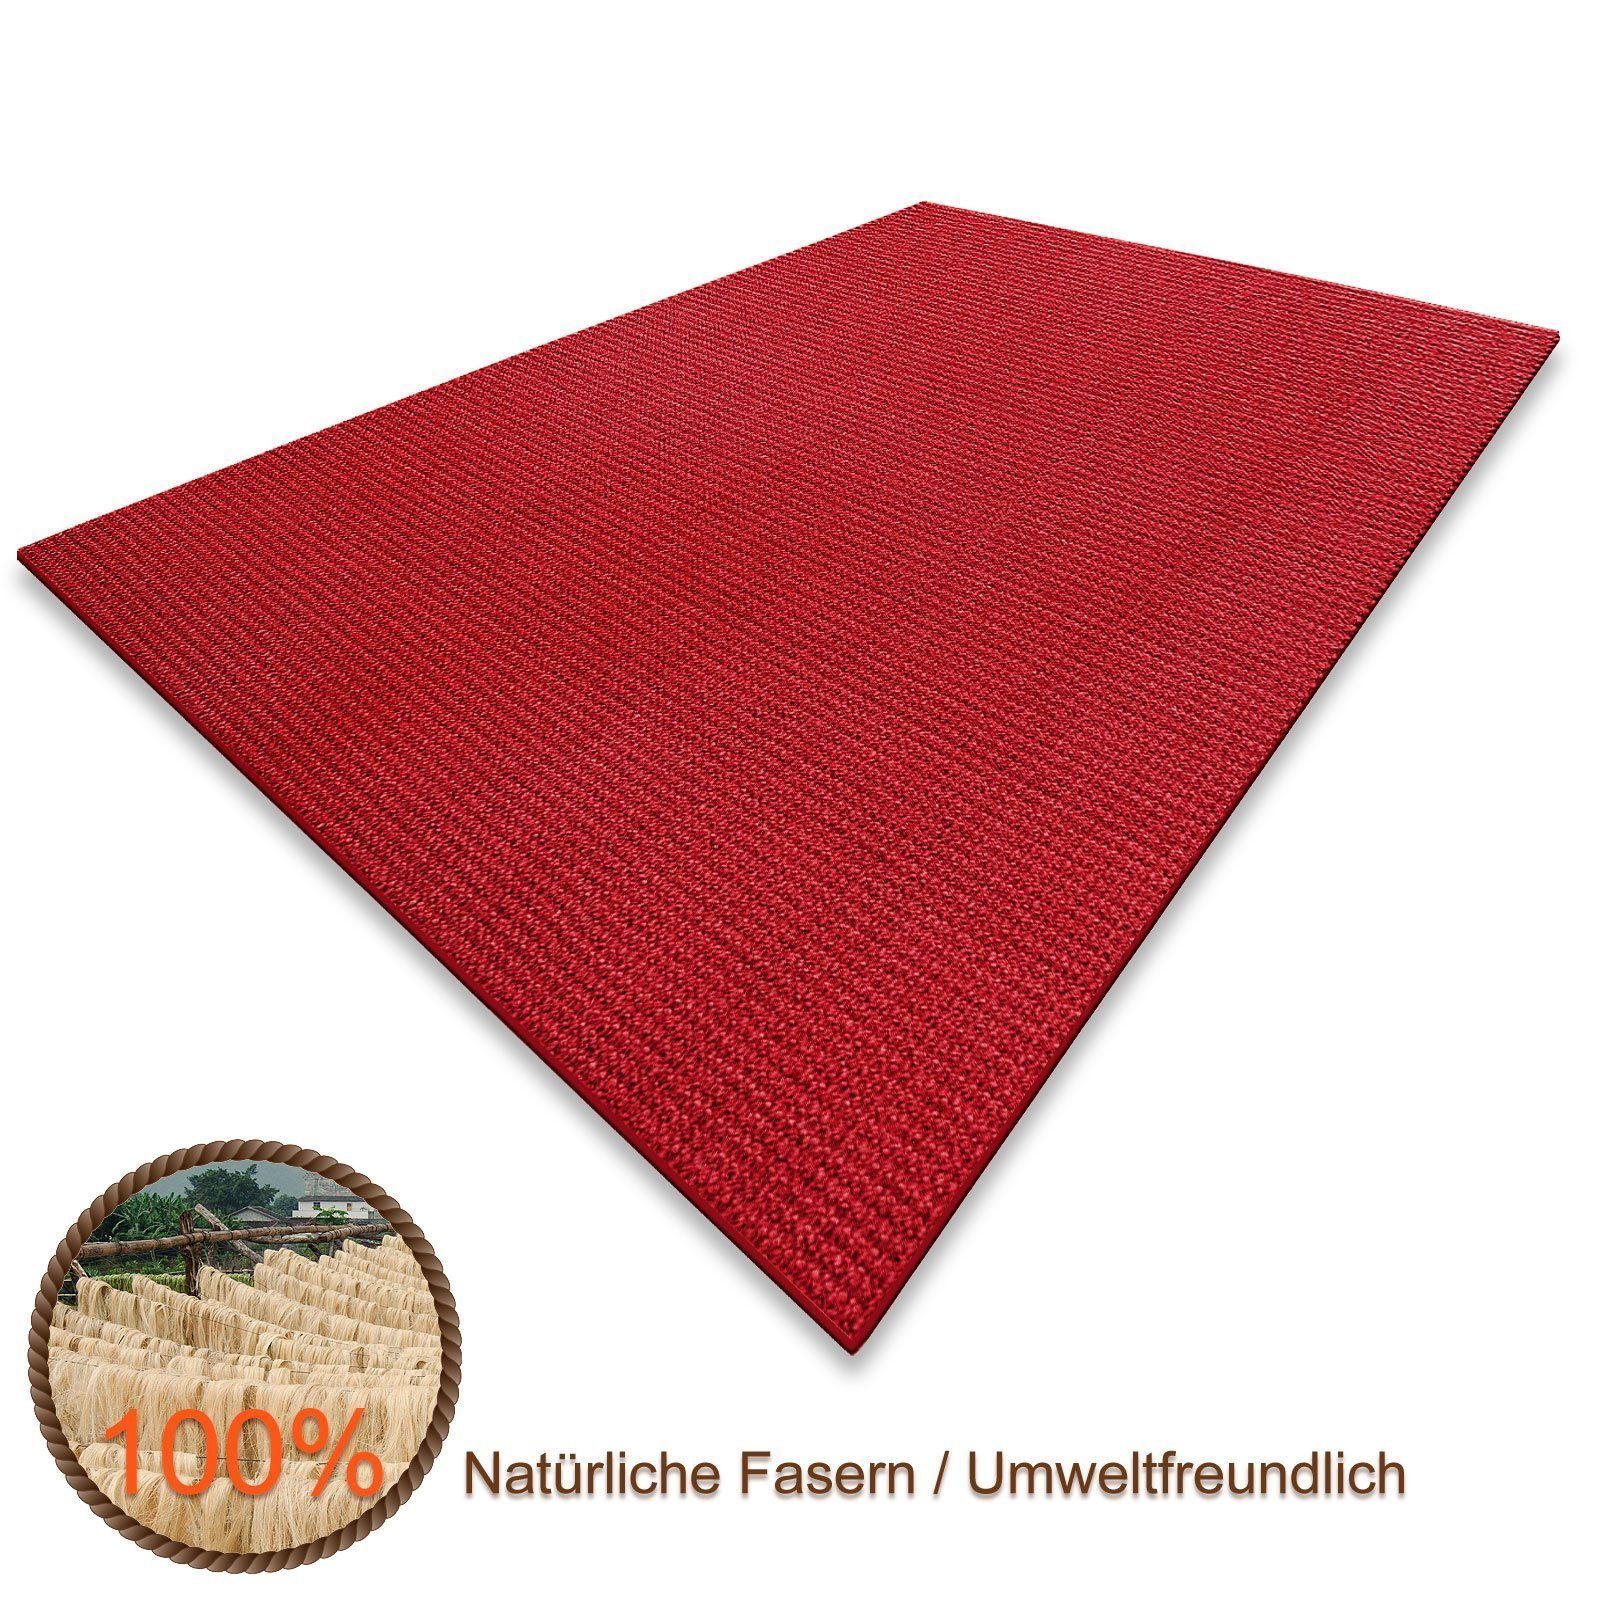 Sisalteppich Peru Rot, Teppich in verschiedenen Größen, Teppichläufer, Karat, Eckig, Höhe: 6 mm, Eckig